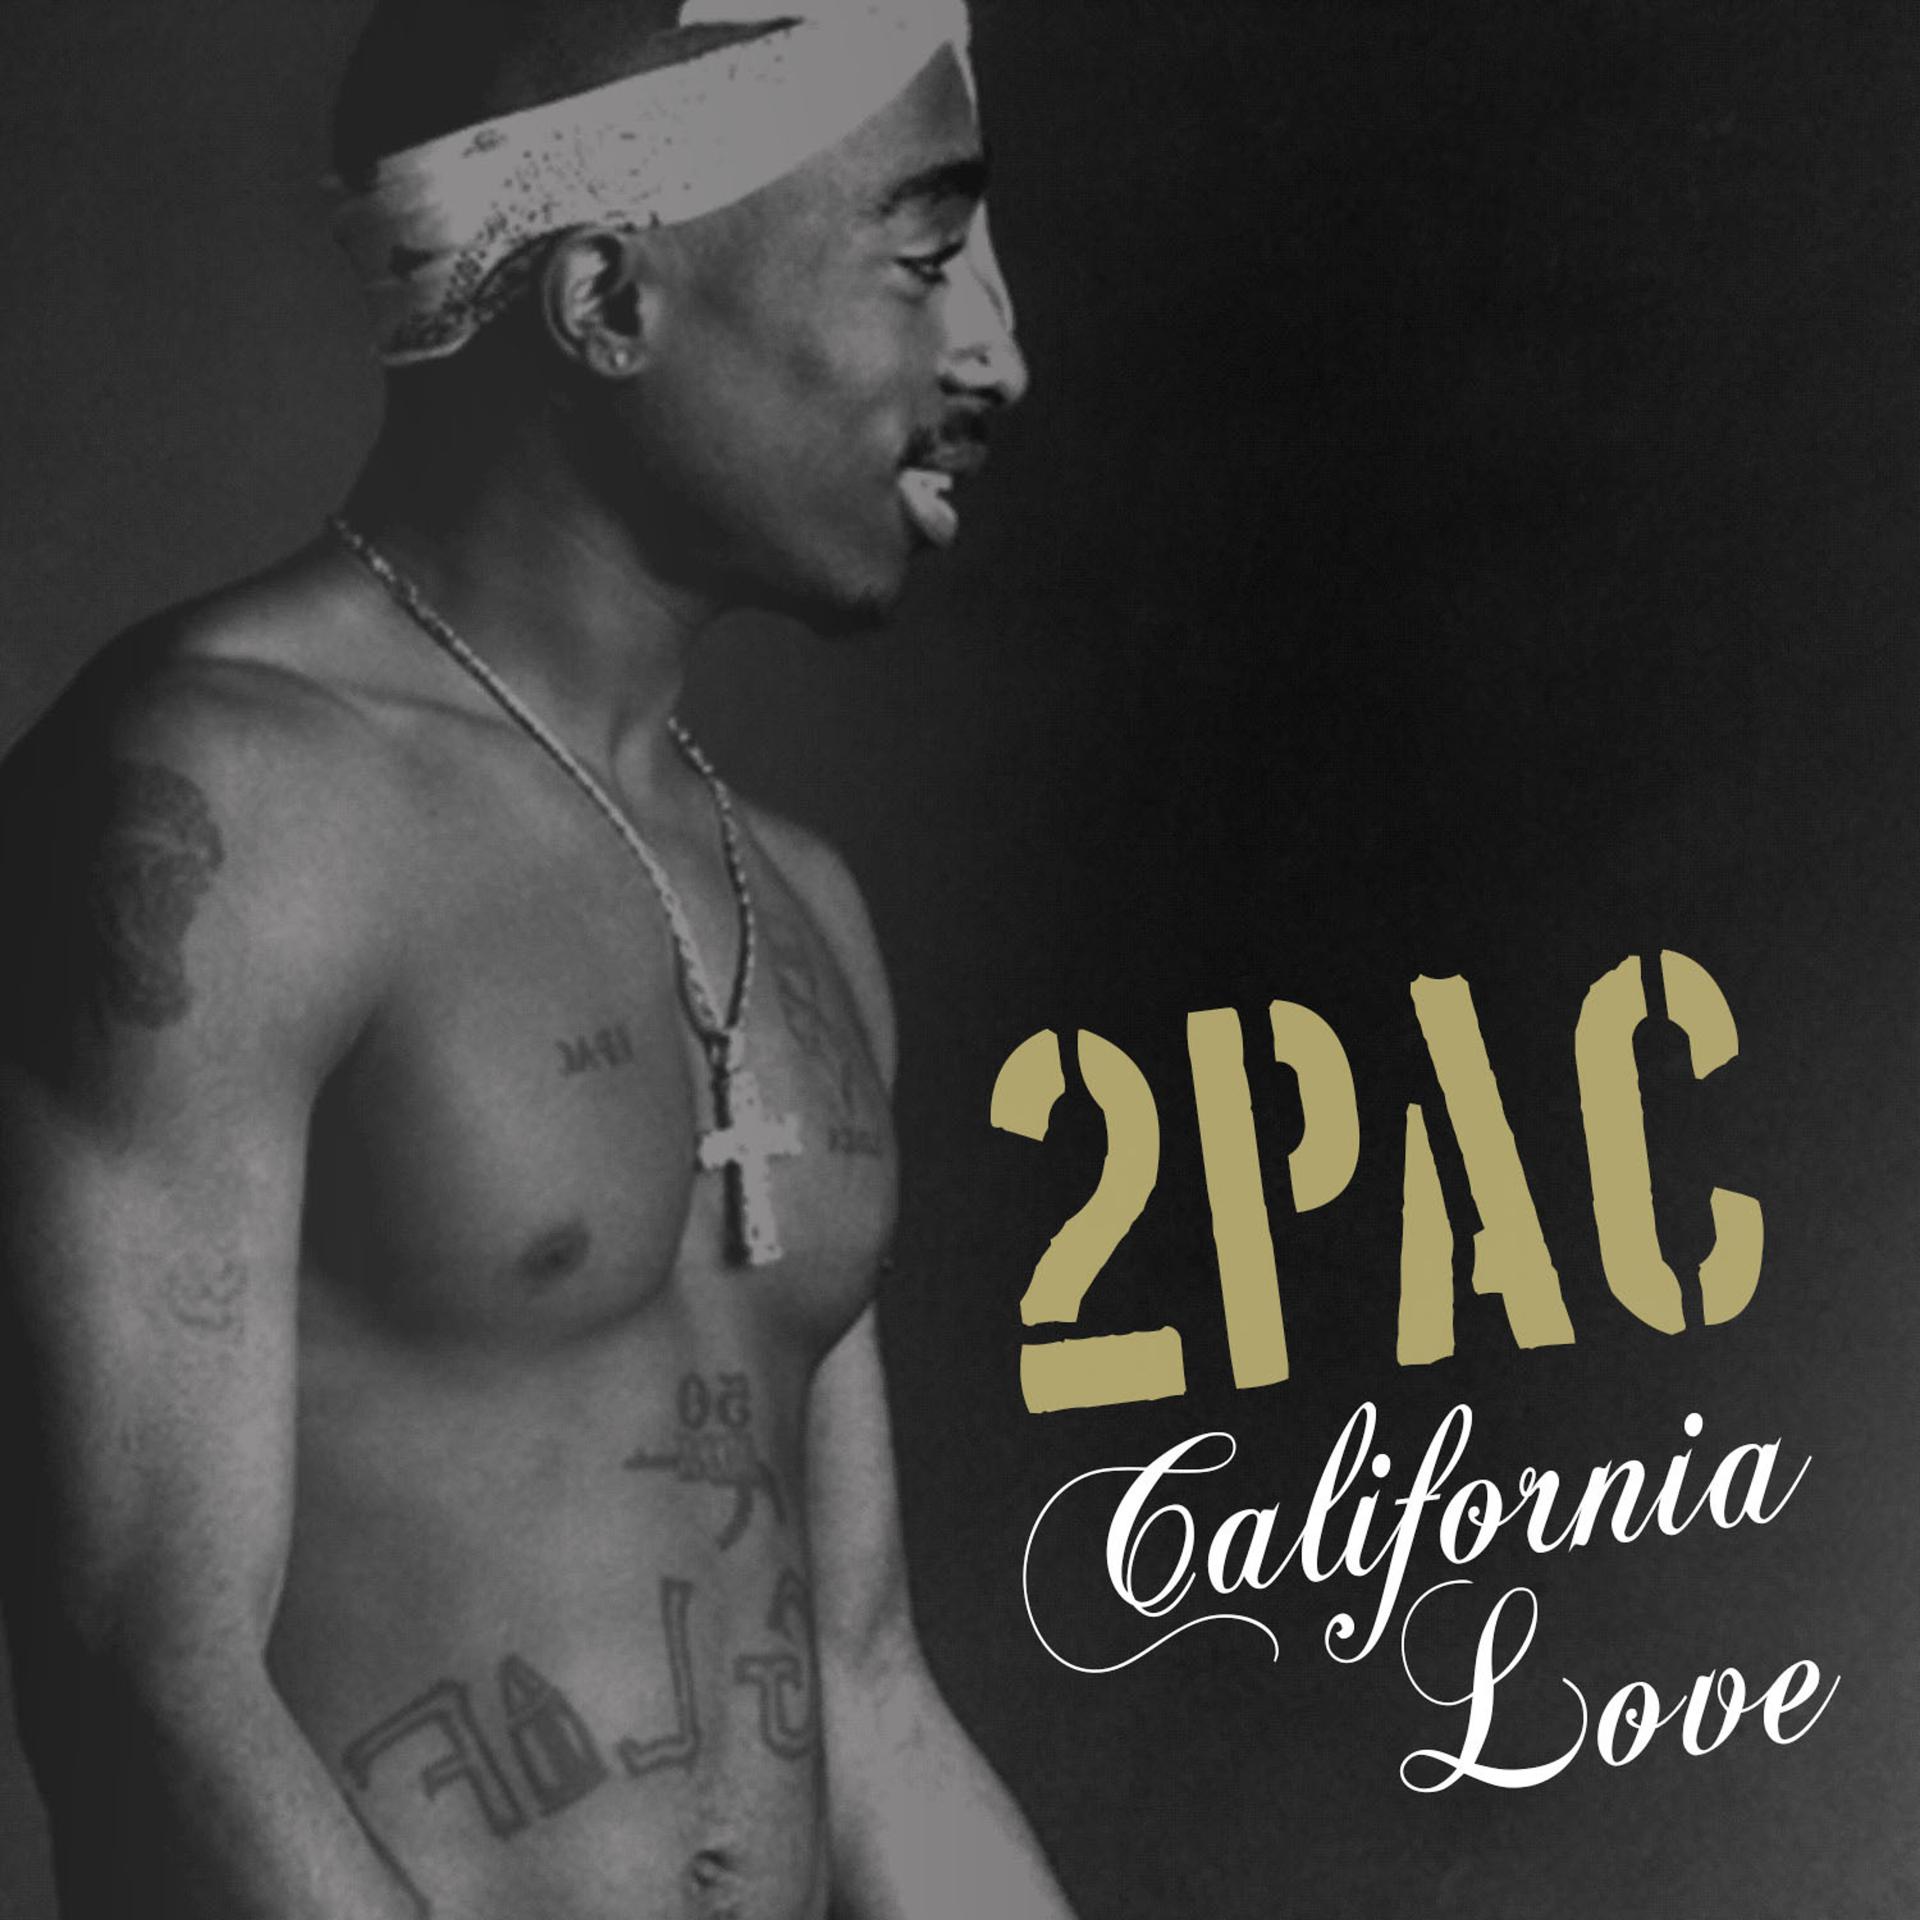 Тупак Шакур обложка. 2pac California Love обложка. 2пак музыкант. Тупак обложка альбома. Бесплатные песни 2pac